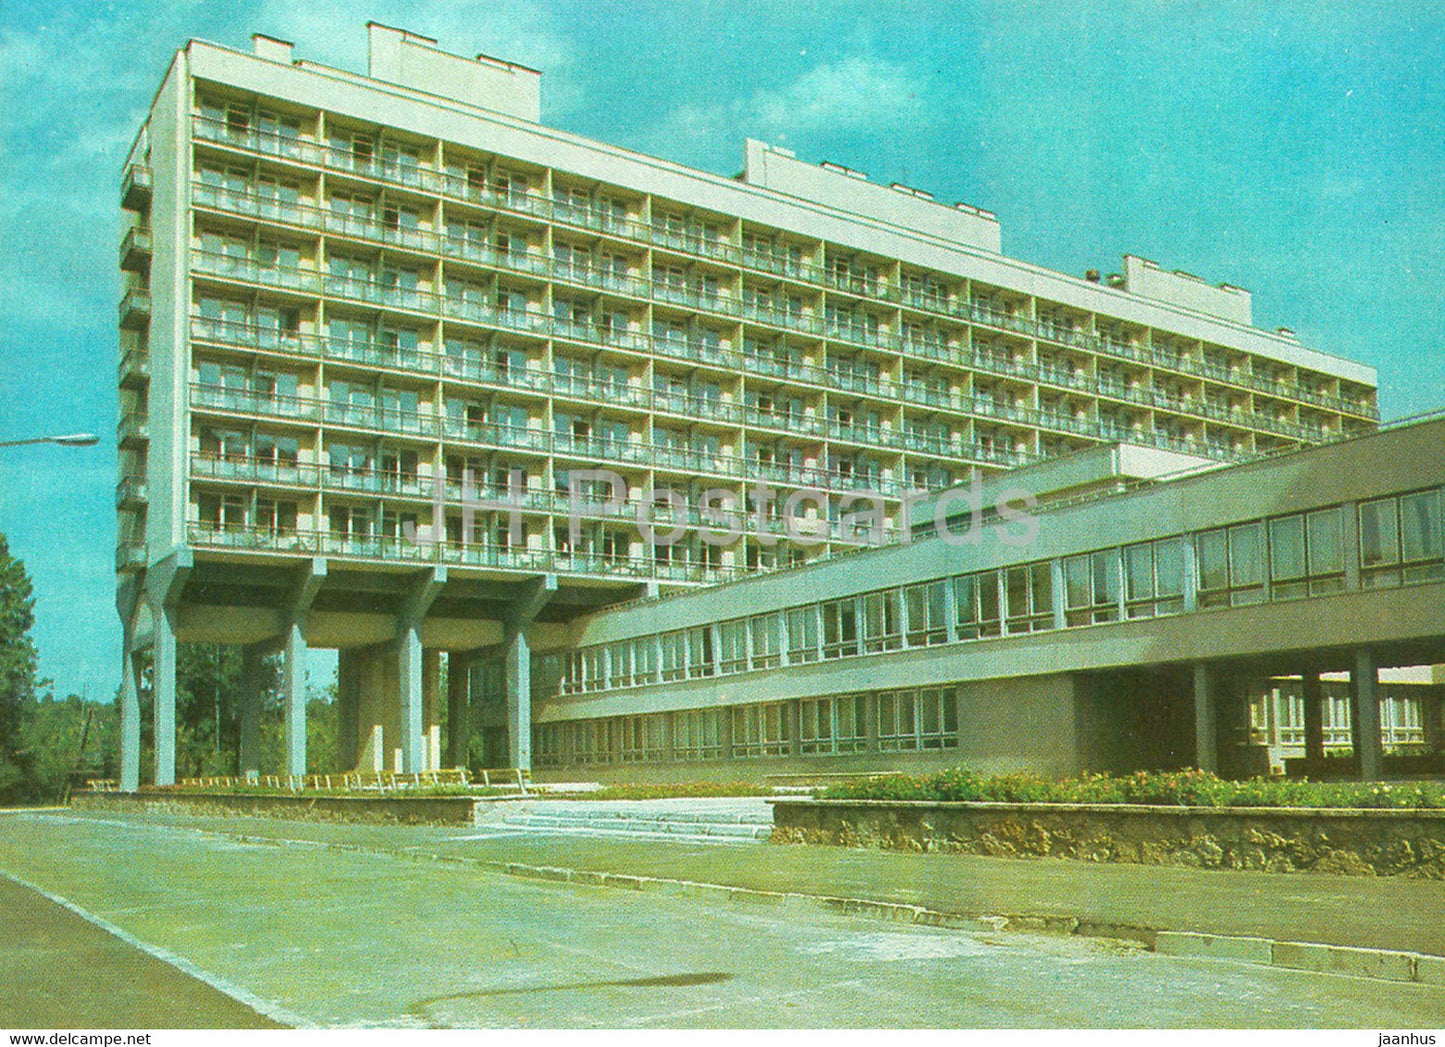 Jurmala - sanatorium Latvija at Jaunkemeri - 1986 - Latvia USSR - unused - JH Postcards